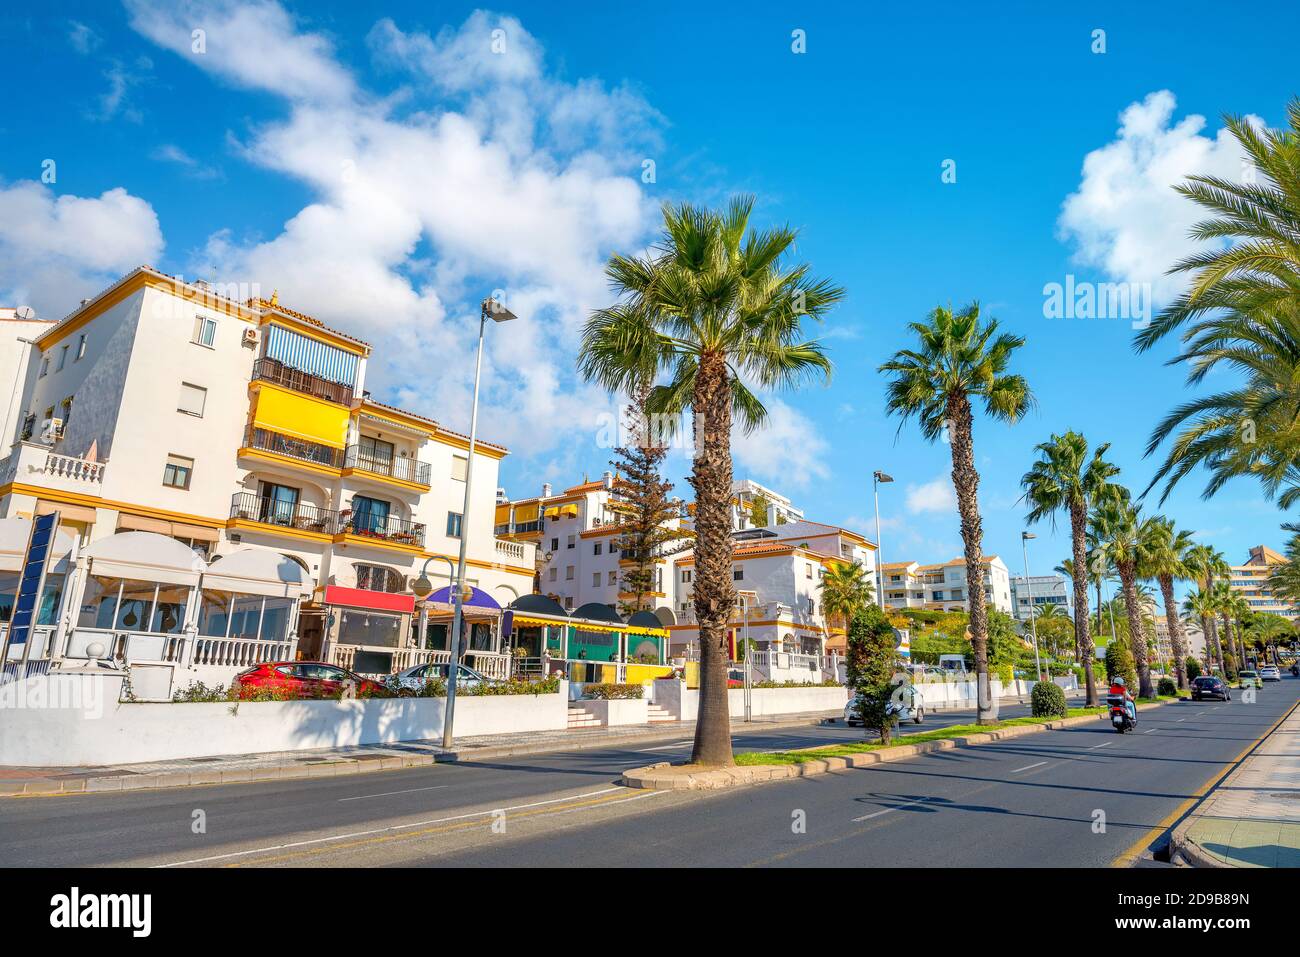 Paisaje urbano del distrito residencial costero a lo largo de la costa en la ciudad turística de Benalmádena. Málaga provincia, Andalucía, España Foto de stock